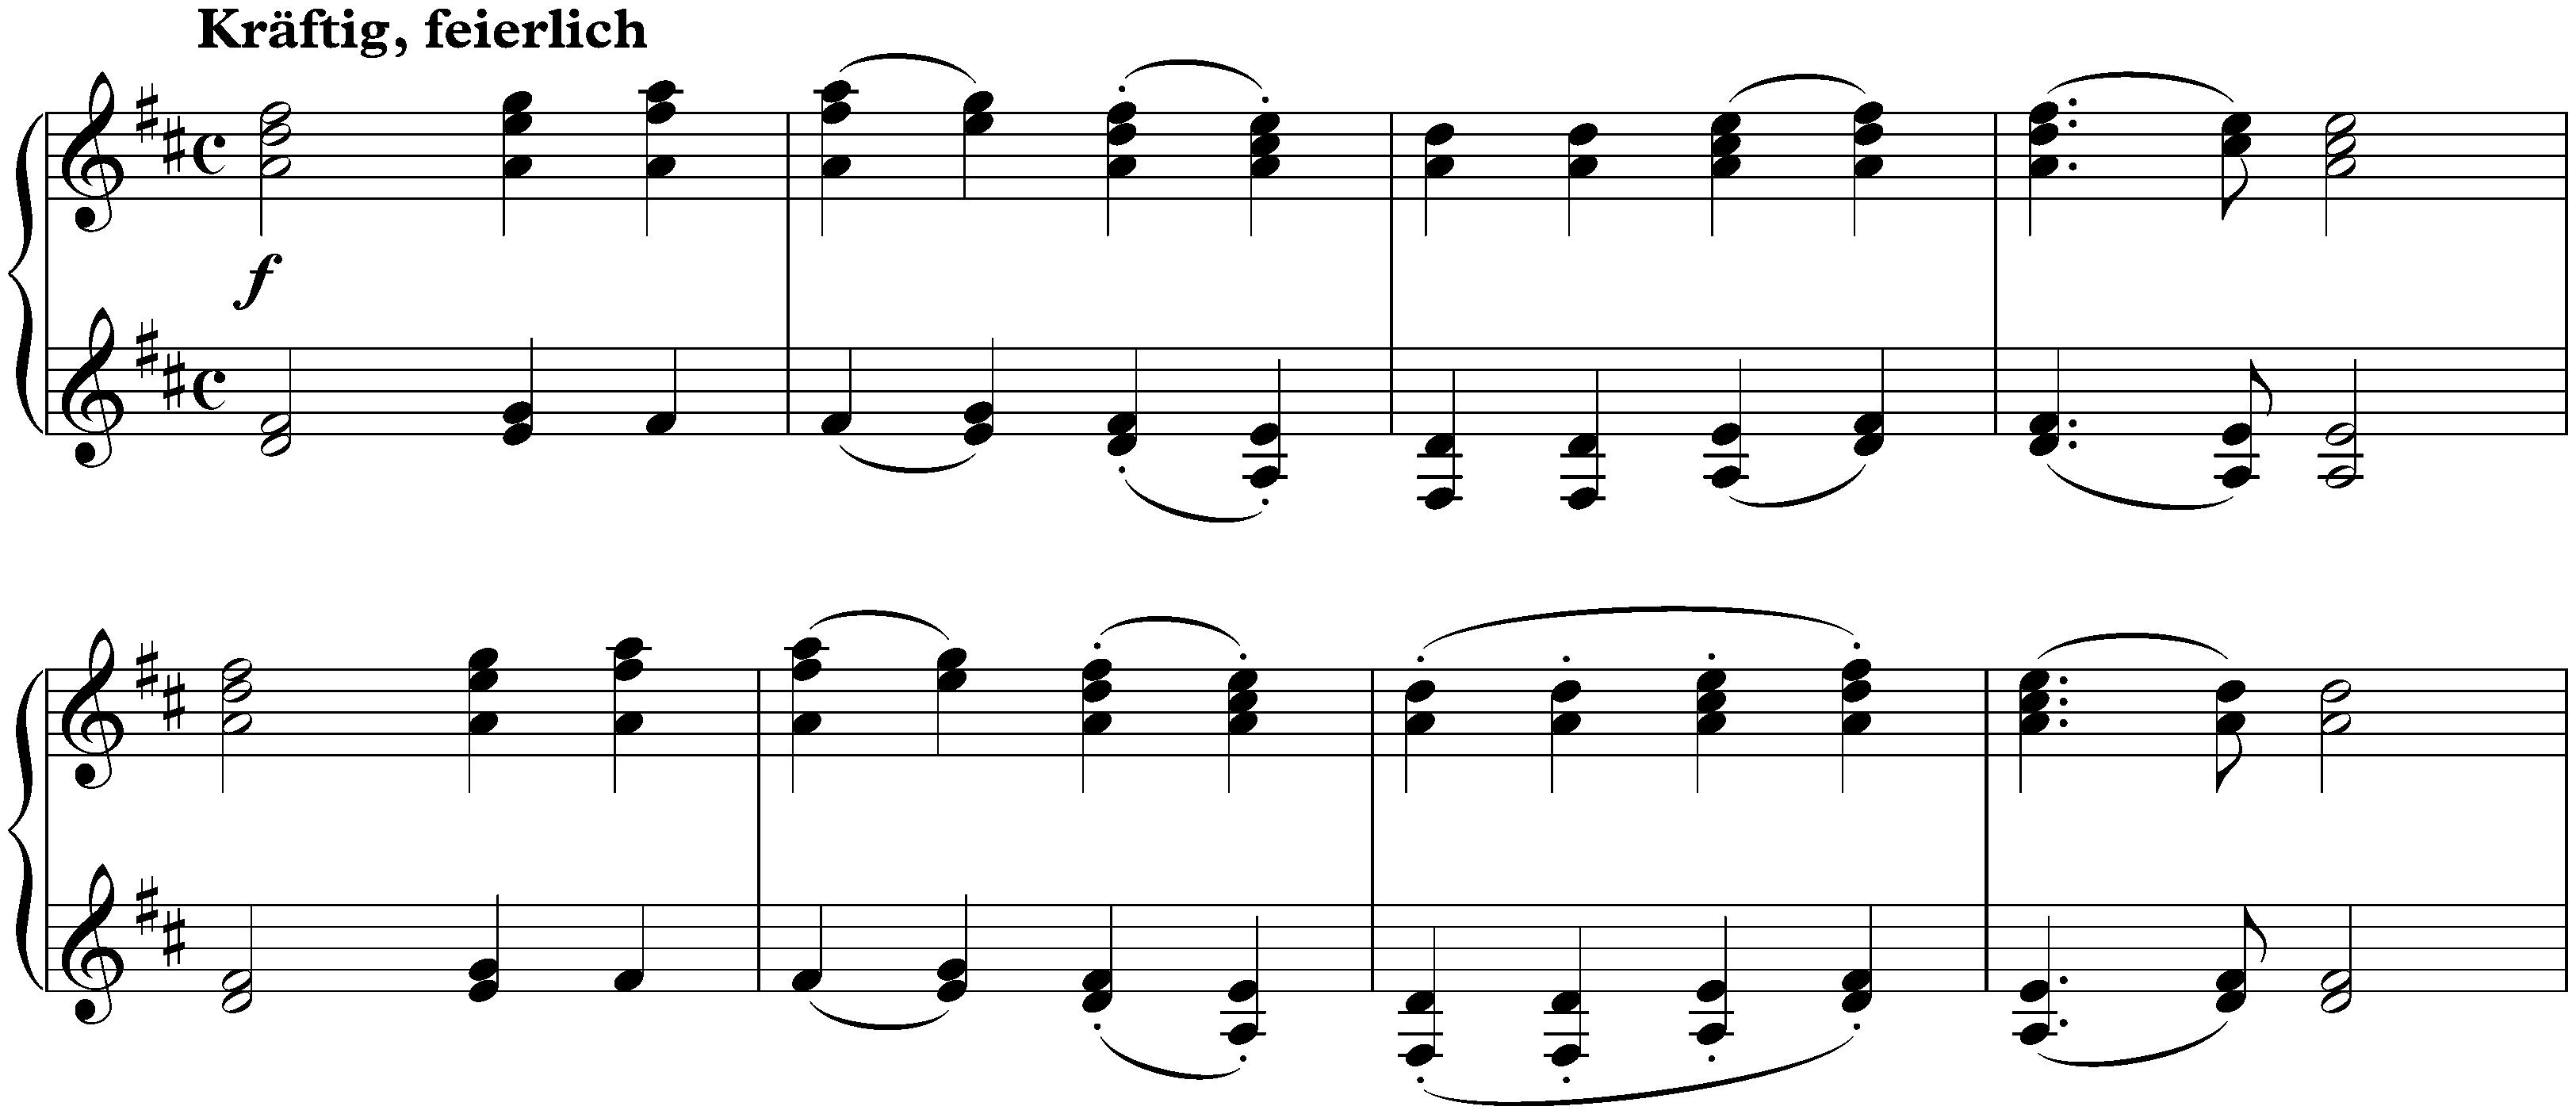 Album für die Jugend, op. 68; 61. (appendix II no. 7) Eine berühmte Melodie von L. v. Beethoven